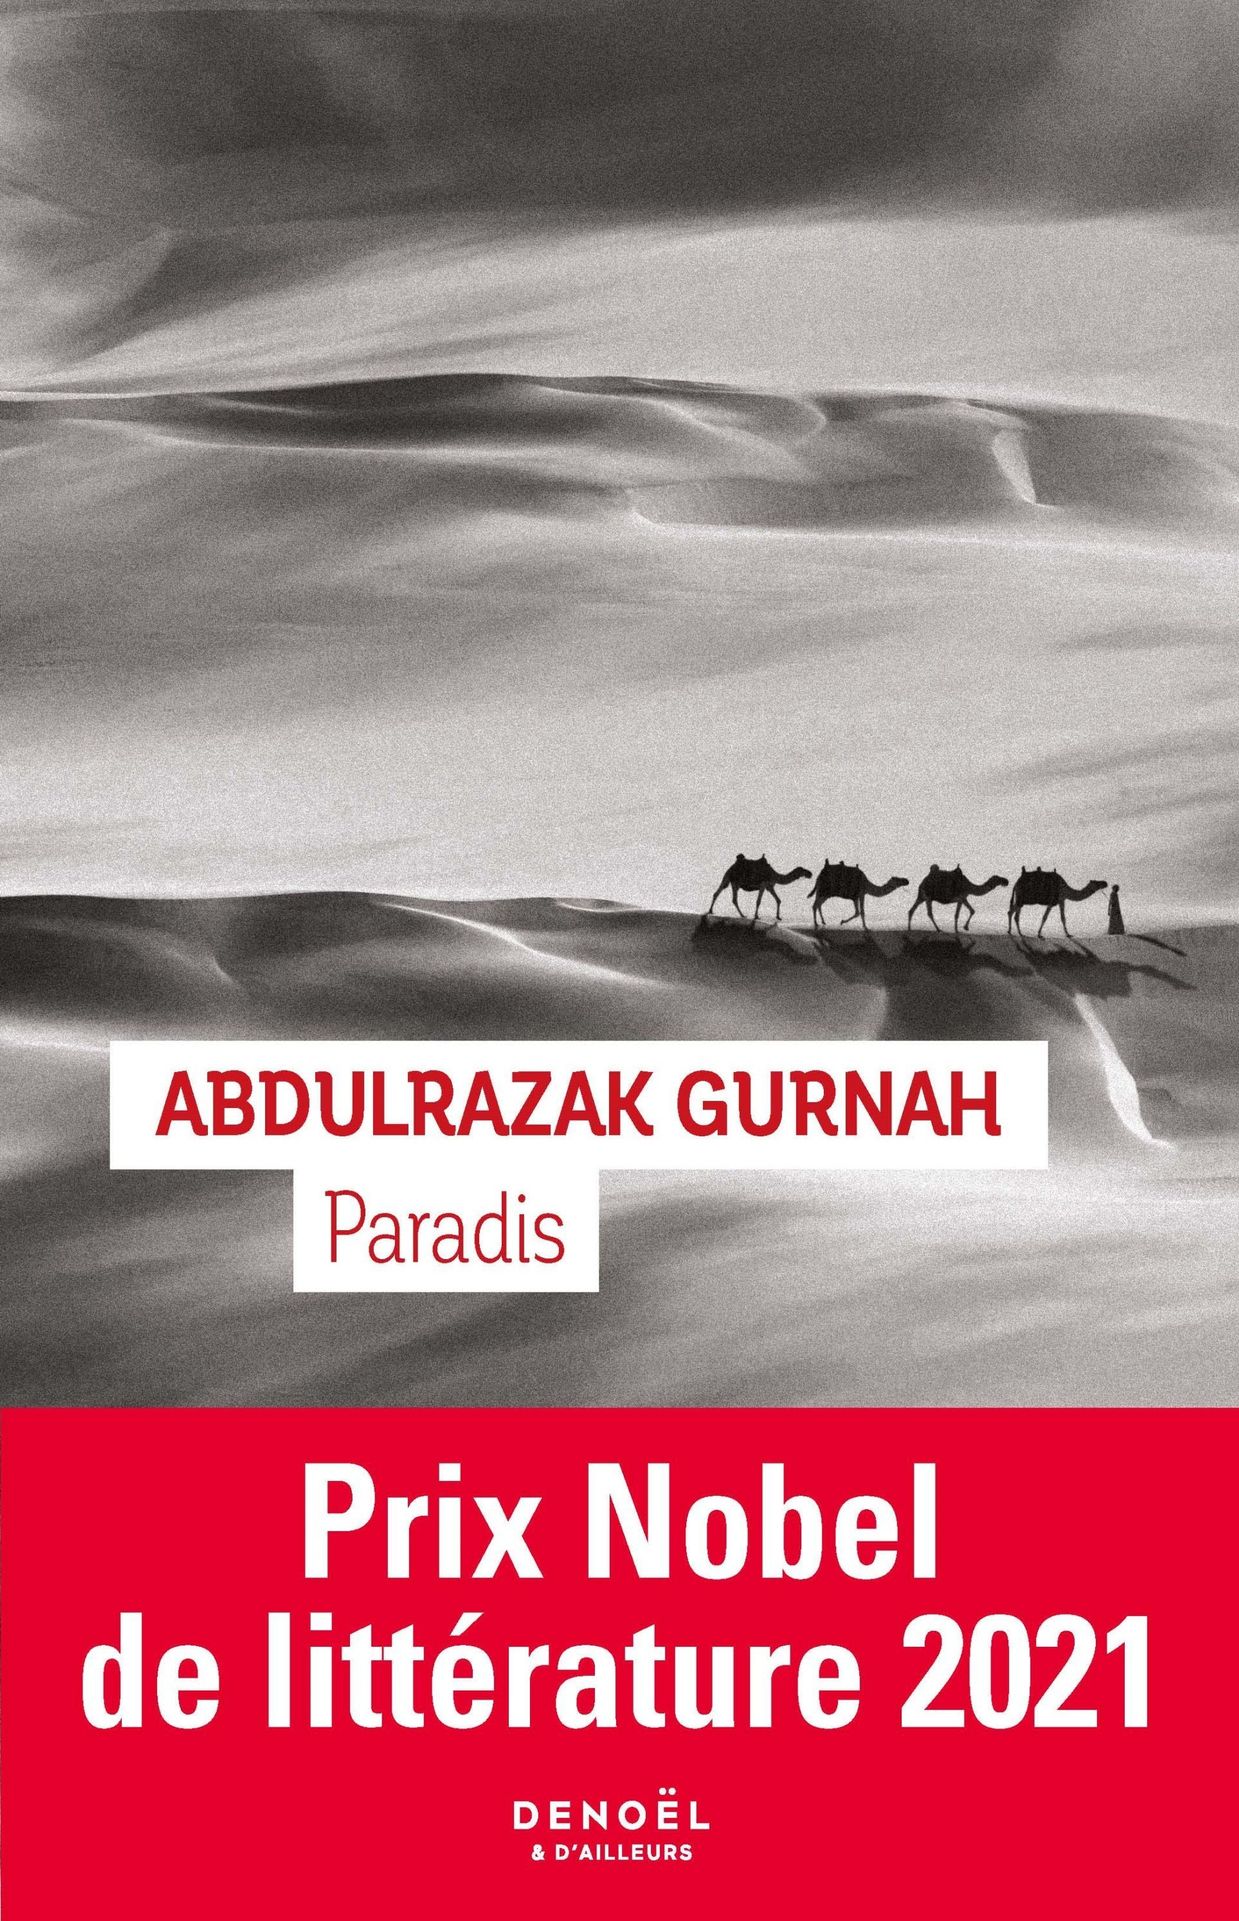 Première de couverture du roman " Paradis" de l’auteur Abdulrazak Gurnah.